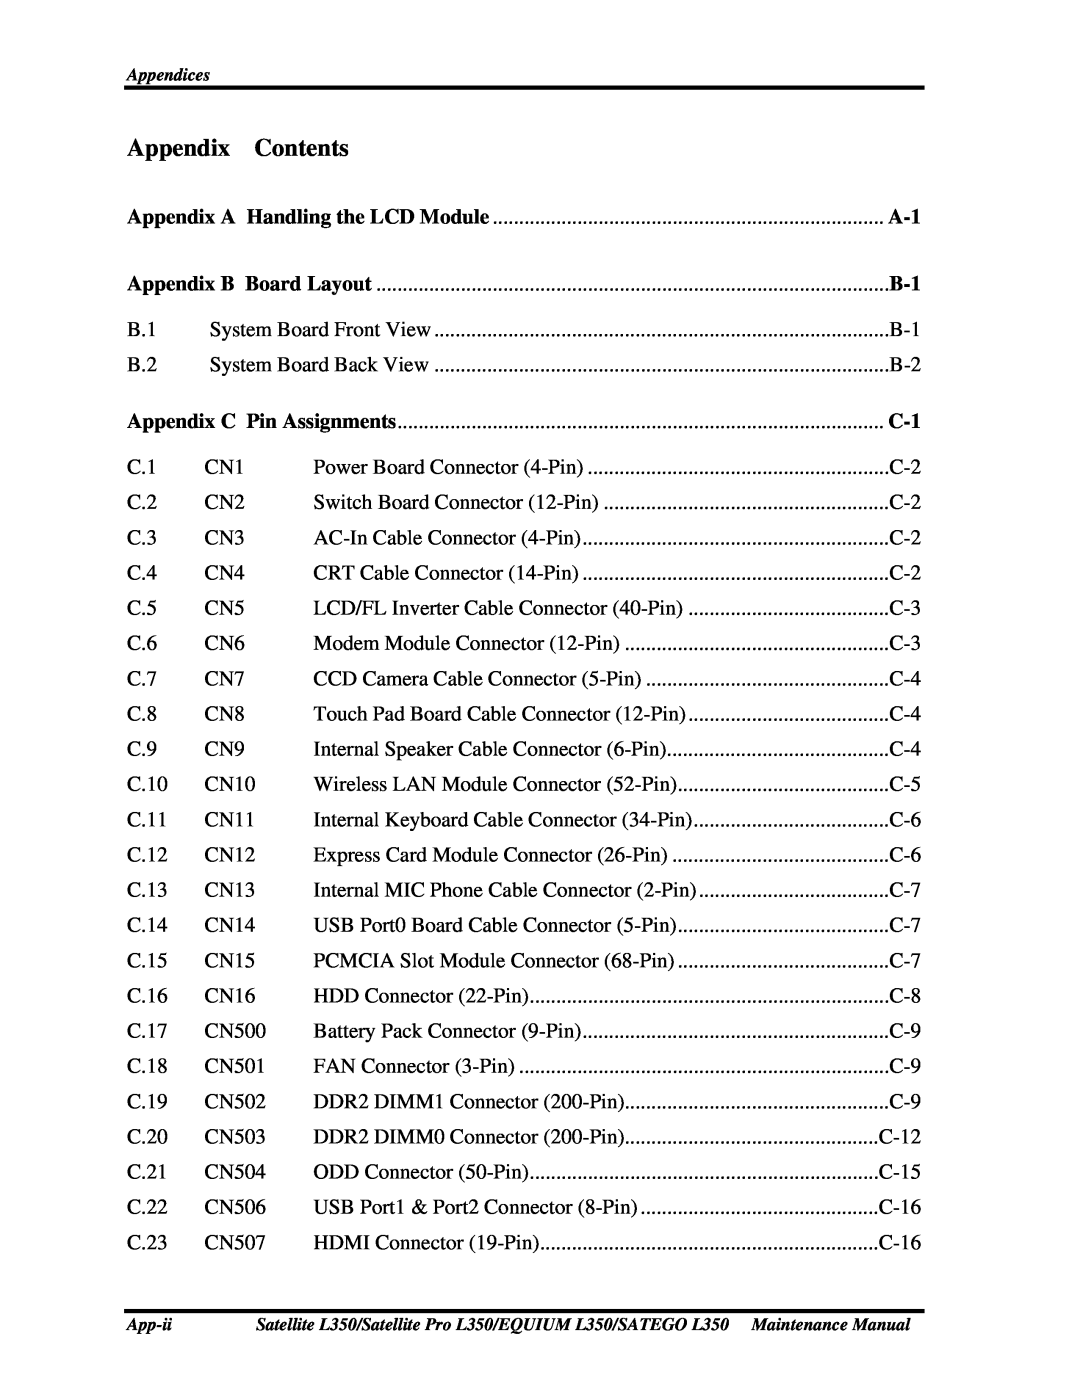 Toshiba PSLD3X, PSLD1X, PSLD2X manual Appendix Contents 